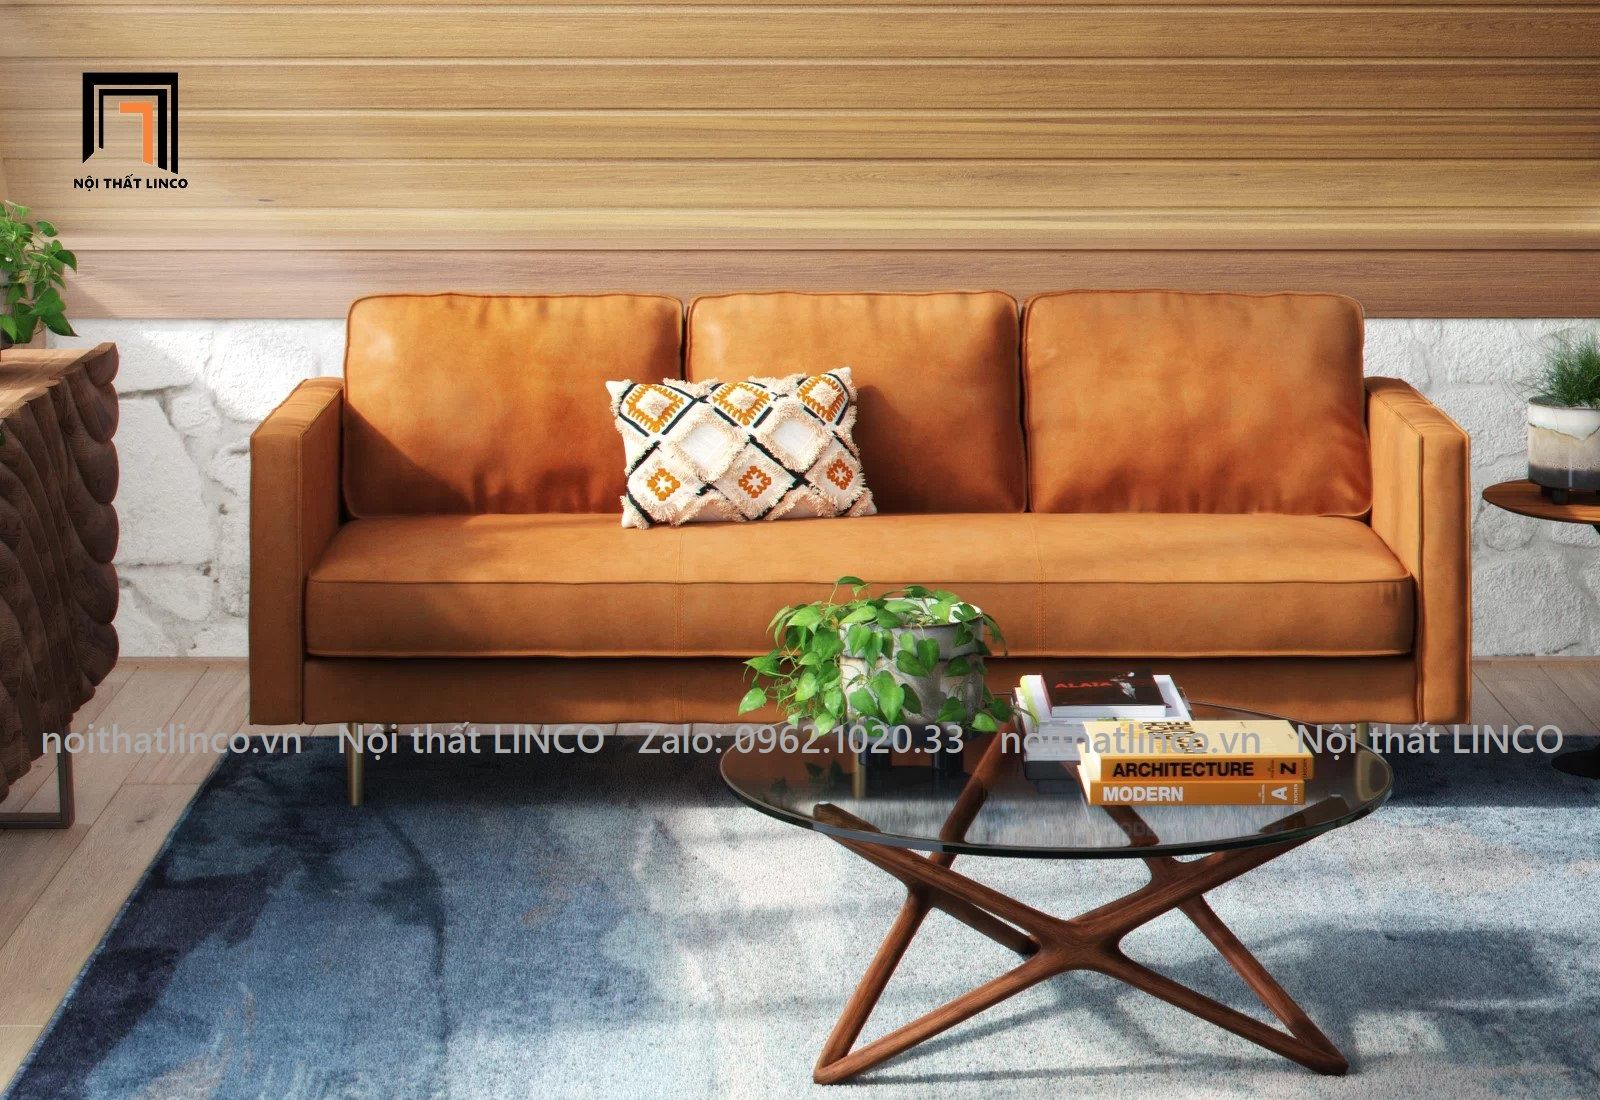  Ghế sofa băng da công nghiệp BT32-Roderic dài 2m màu da bò 